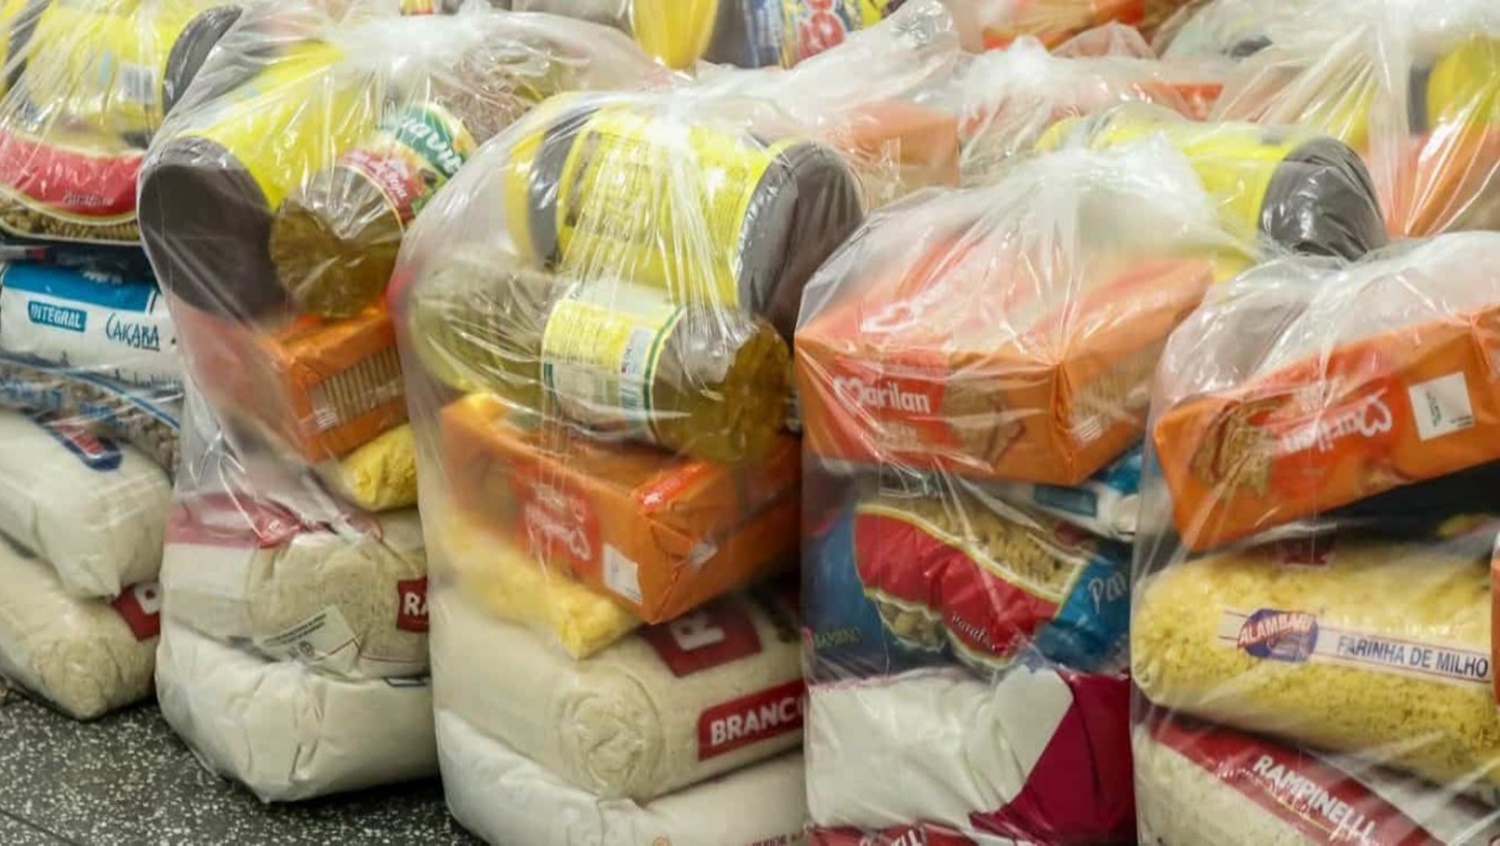 PESO NO BOLSO: Preço da cesta básica sobe novamente em Porto Velho em  janeiro - Rondoniaovivo.com